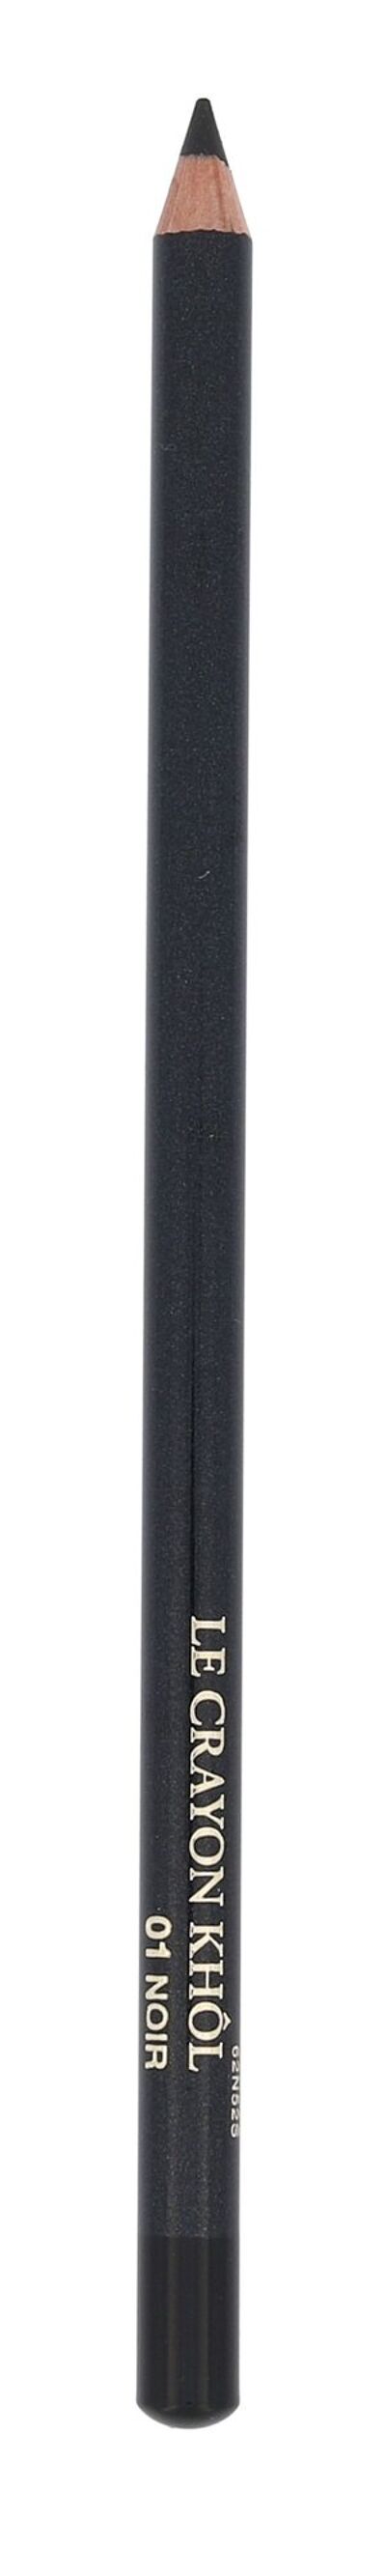 Lancôme Le Crayon Khol Cosmetic 1,8ml 01 Black